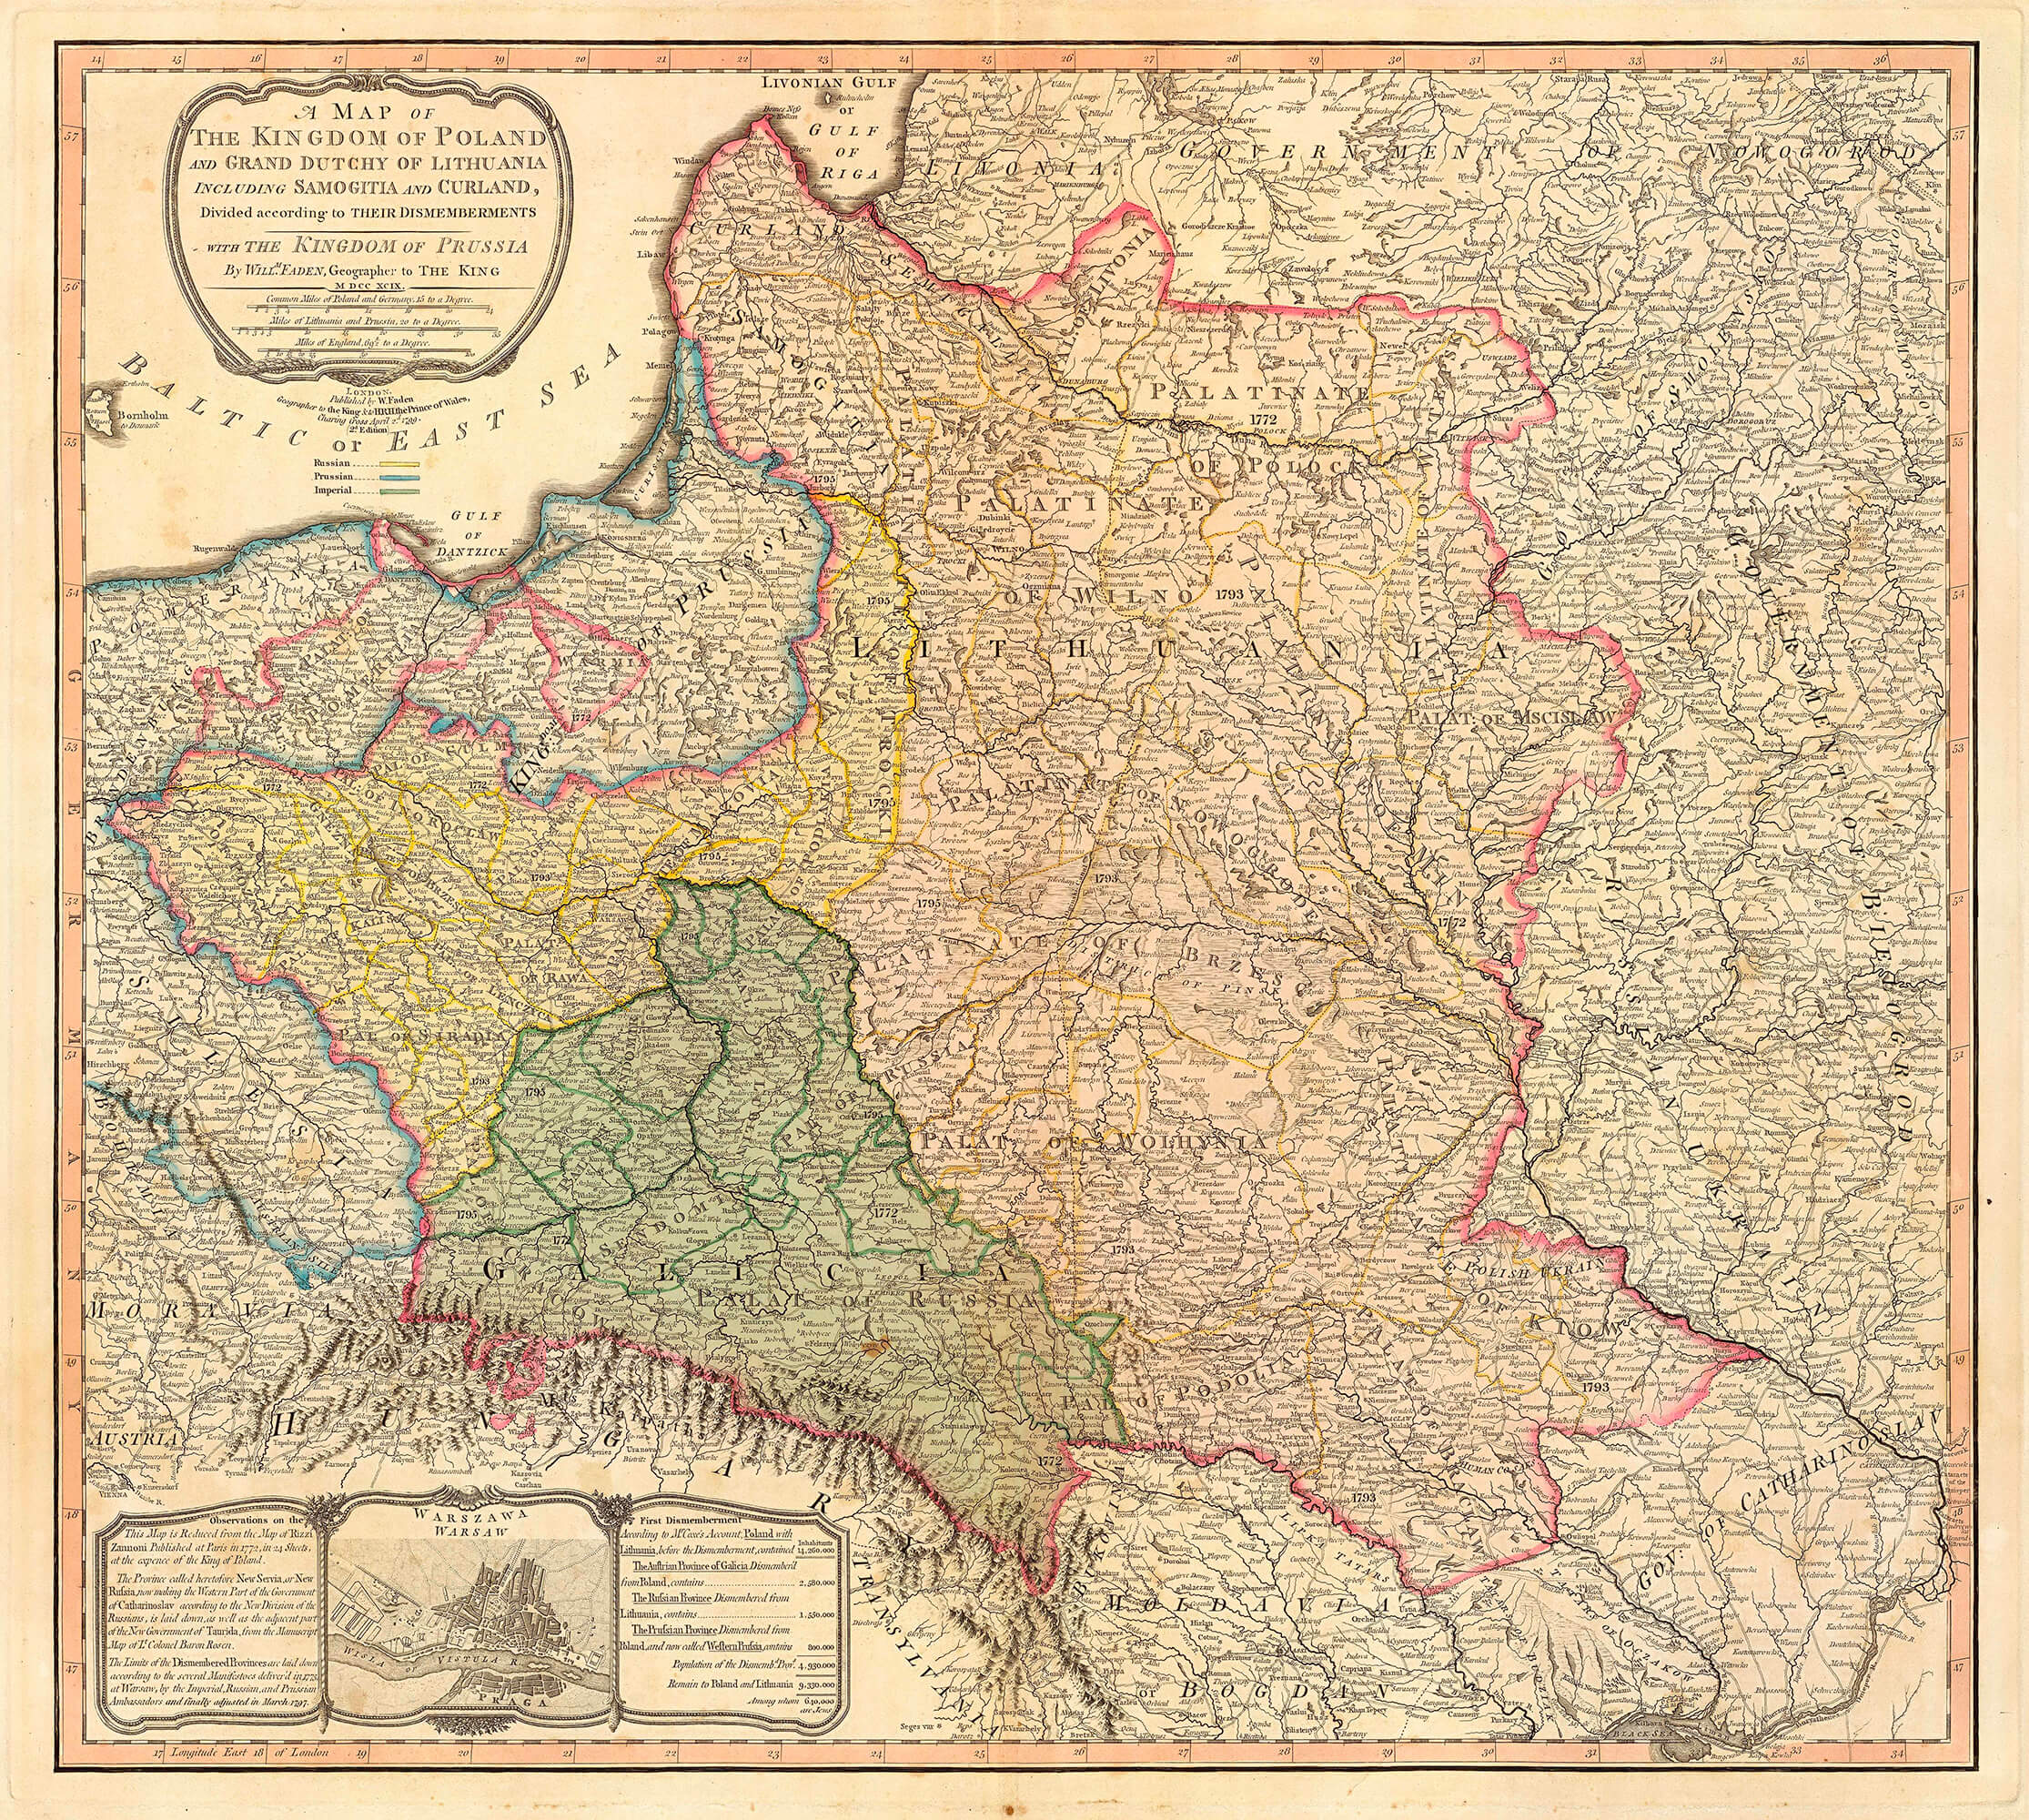 Mapa Polski podzielonej między zaborców, k. XVIII w.